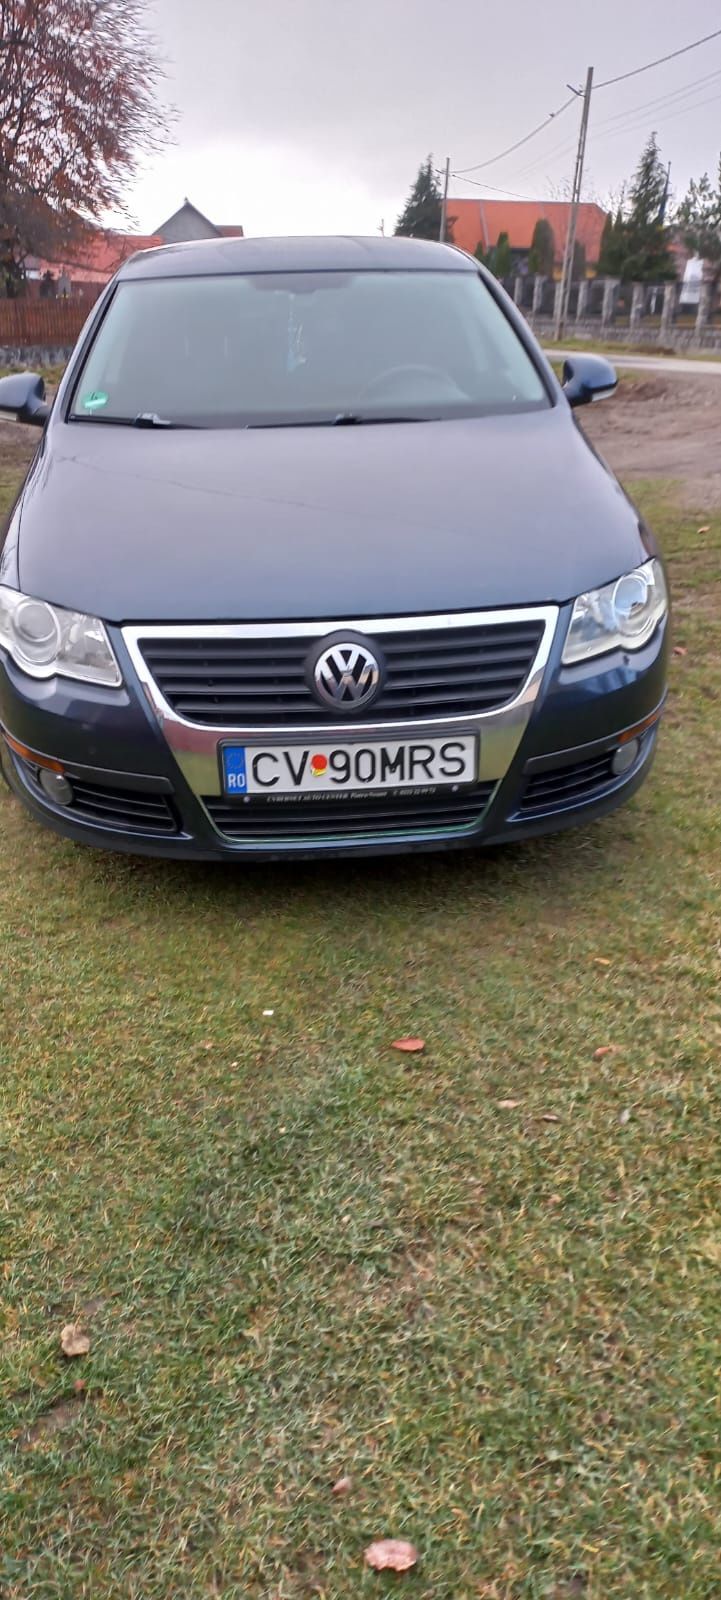 Vând Volkswagen passat b6 1.9 TDI 105 CP 2006